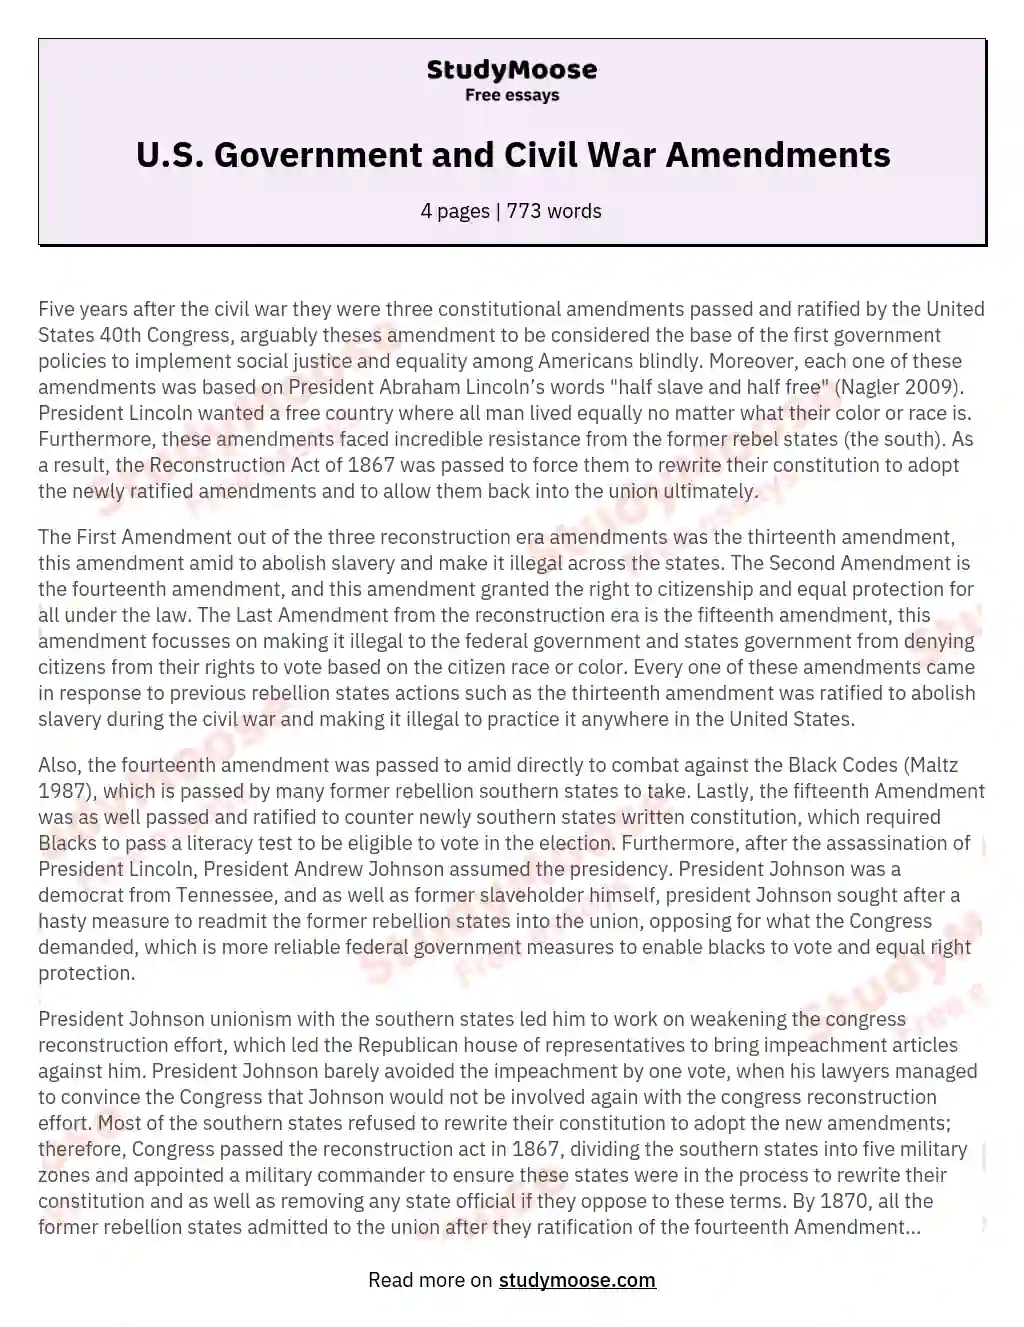 U.S. Government and Civil War Amendments essay